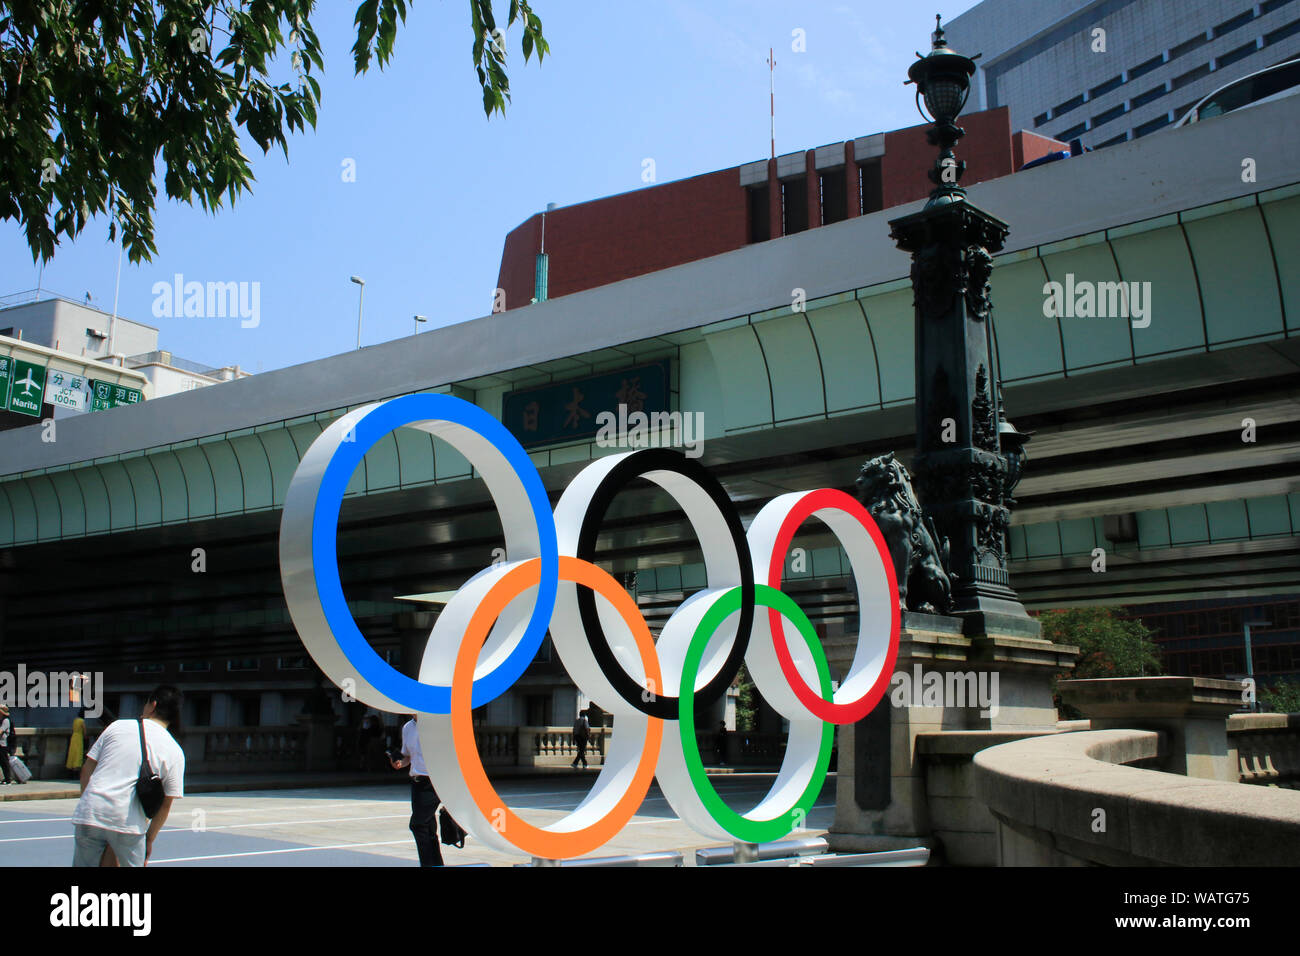 Les anneaux olympiques sont affichées sur le pont Nihonbashi a marqué un an loin de les Jeux Olympiques et Paralympiques de Tokyo 2020. Nihonbashi, Tokyo. Banque D'Images